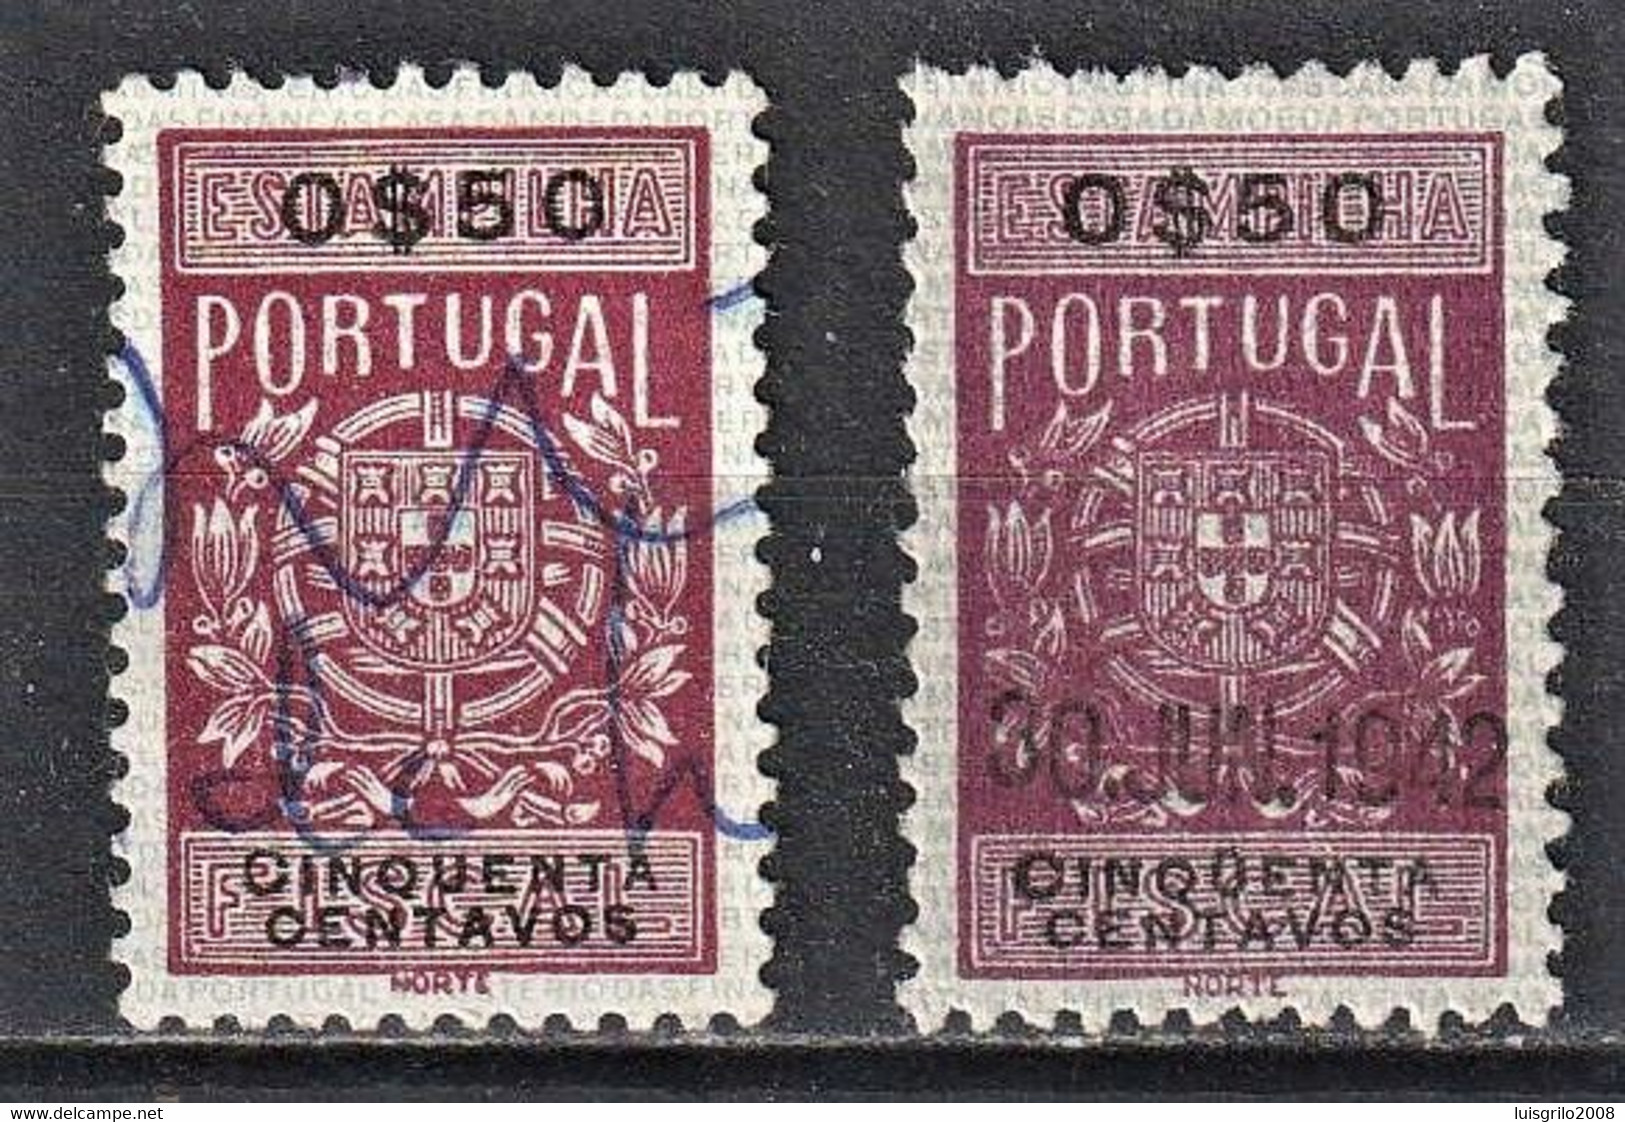 Fiscal/ Revenue, Portugal 1940 - Estampilha Fiscal -|- RARE STAMP - 0$50 Cinqüenta (Accents On The Letter U) - Oblitérés